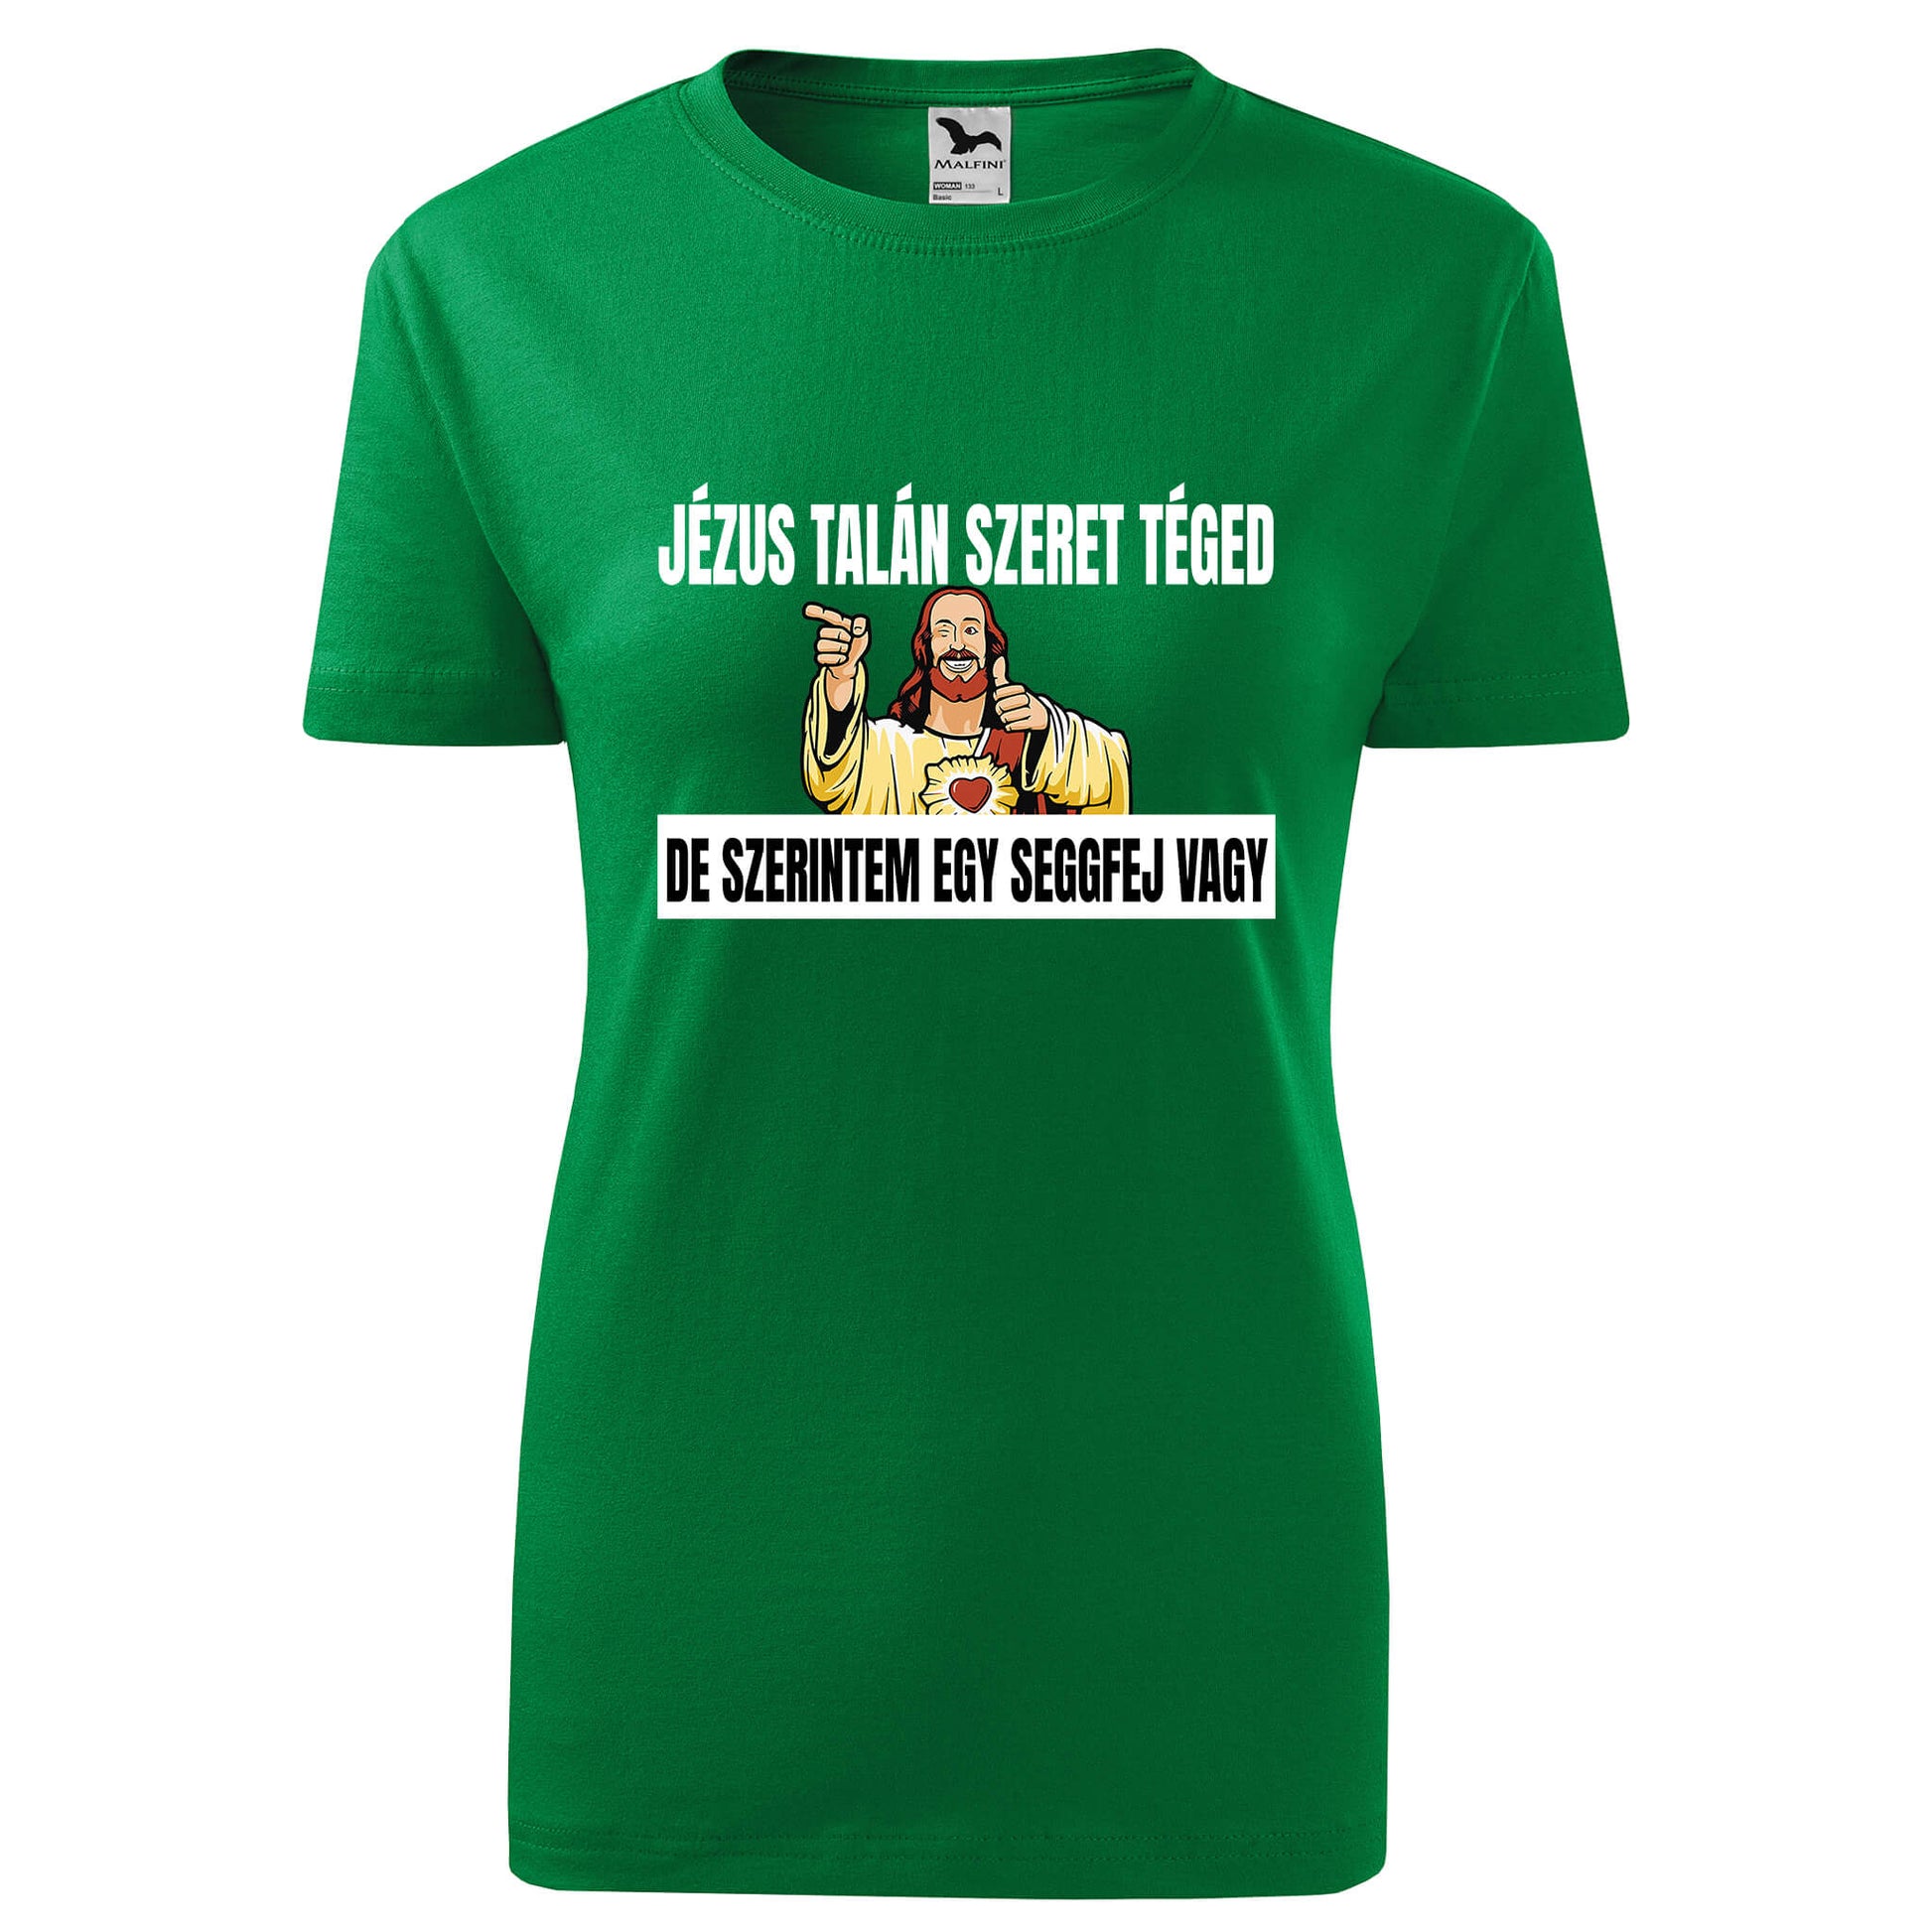 Jezus talan szeret teged t-shirt - rvdesignprint